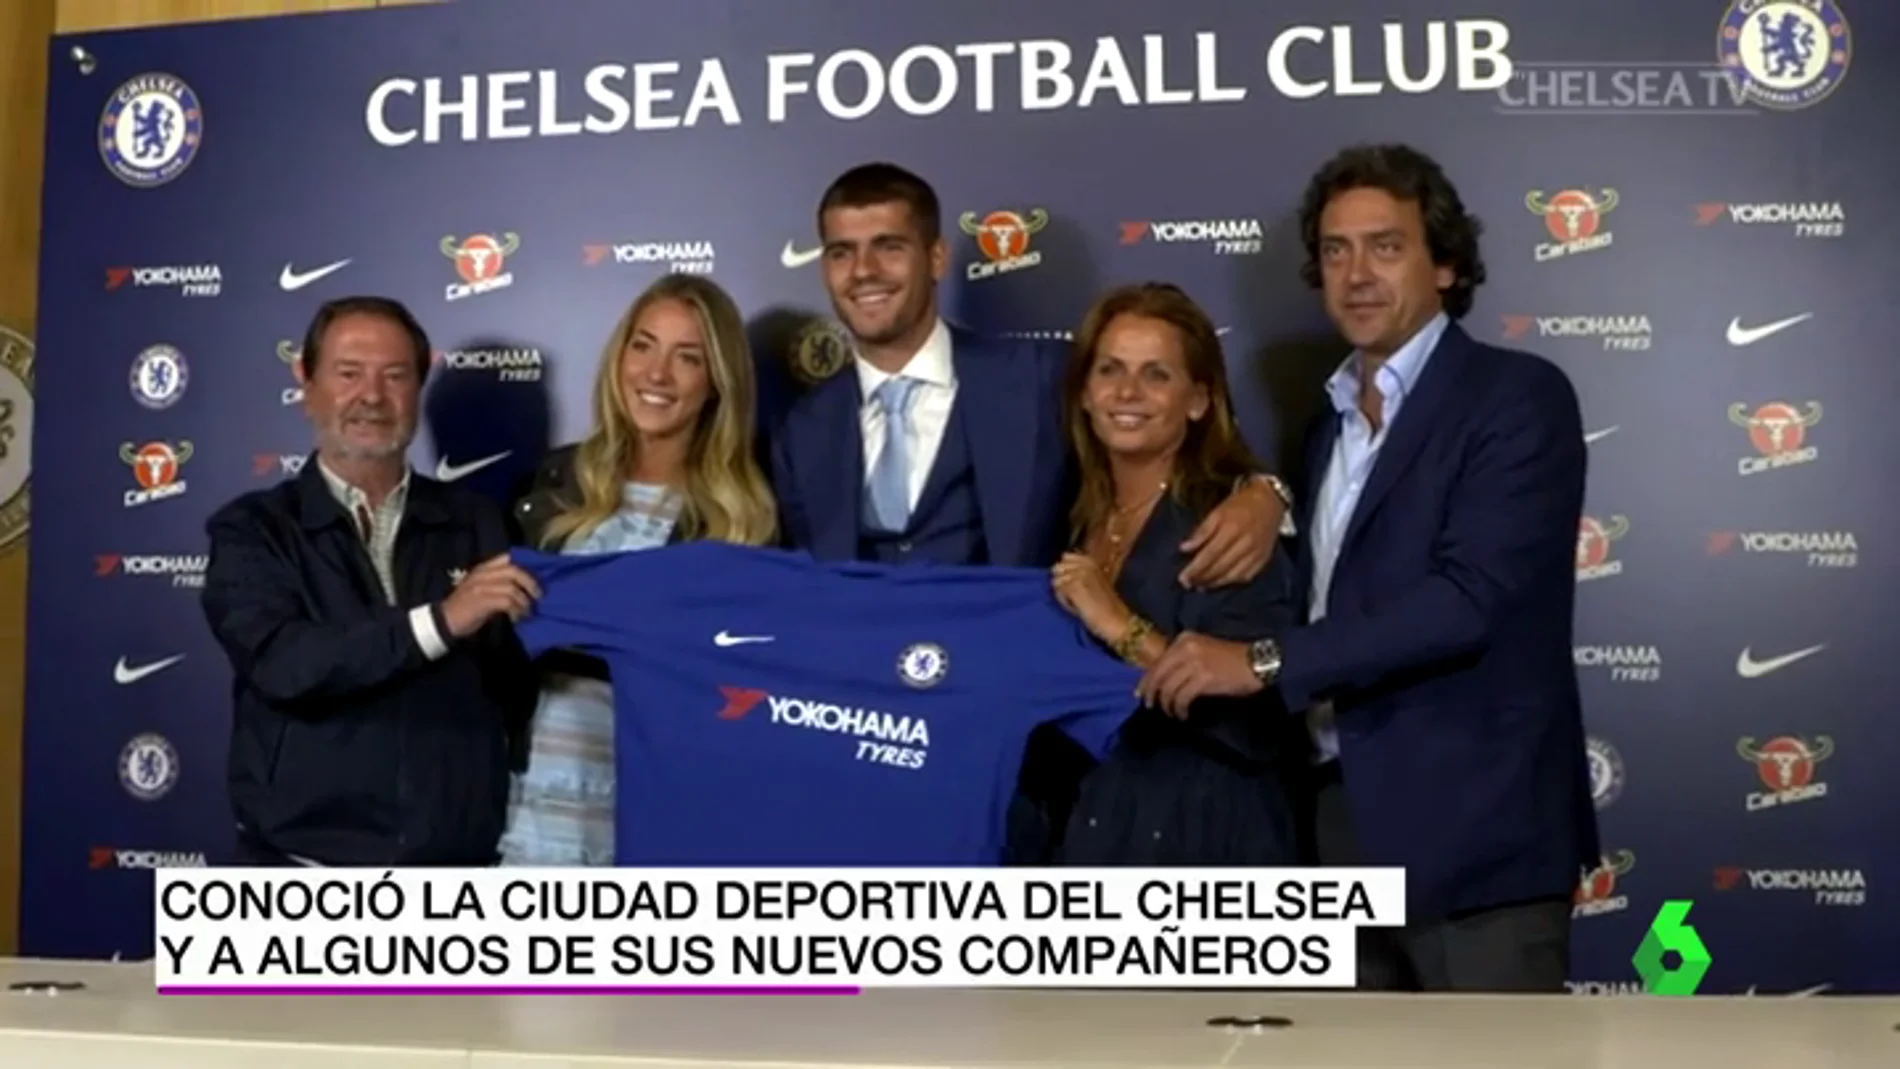 Álvaro Morata ya posa con la camiseta del Chelsea: "Estoy muy feliz de estar aquí"